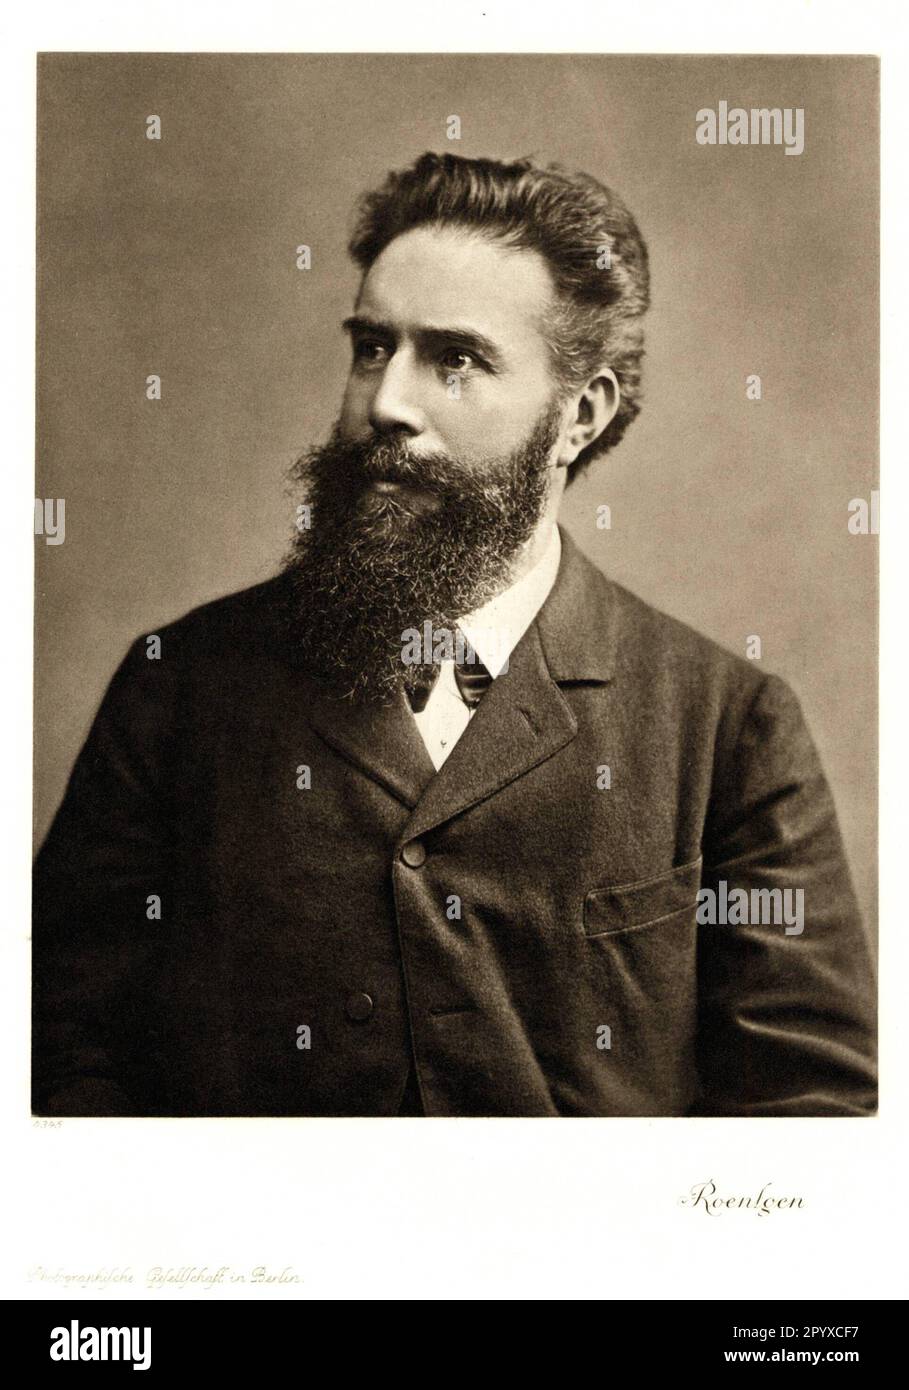 Wilhelm Conrad Röntgen (1845-1923), fisico tedesco. Nel 1895, Röntgen scoprì i raggi X che gli prendono il nome (da lui conosciuti come raggi X). Nel 1901 ha ricevuto il primo Premio Nobel per la fisica. Fotografia. Foto: Heliogravure, Corpus Imaginum, Hanfstaengl Collection. [traduzione automatica] Foto Stock